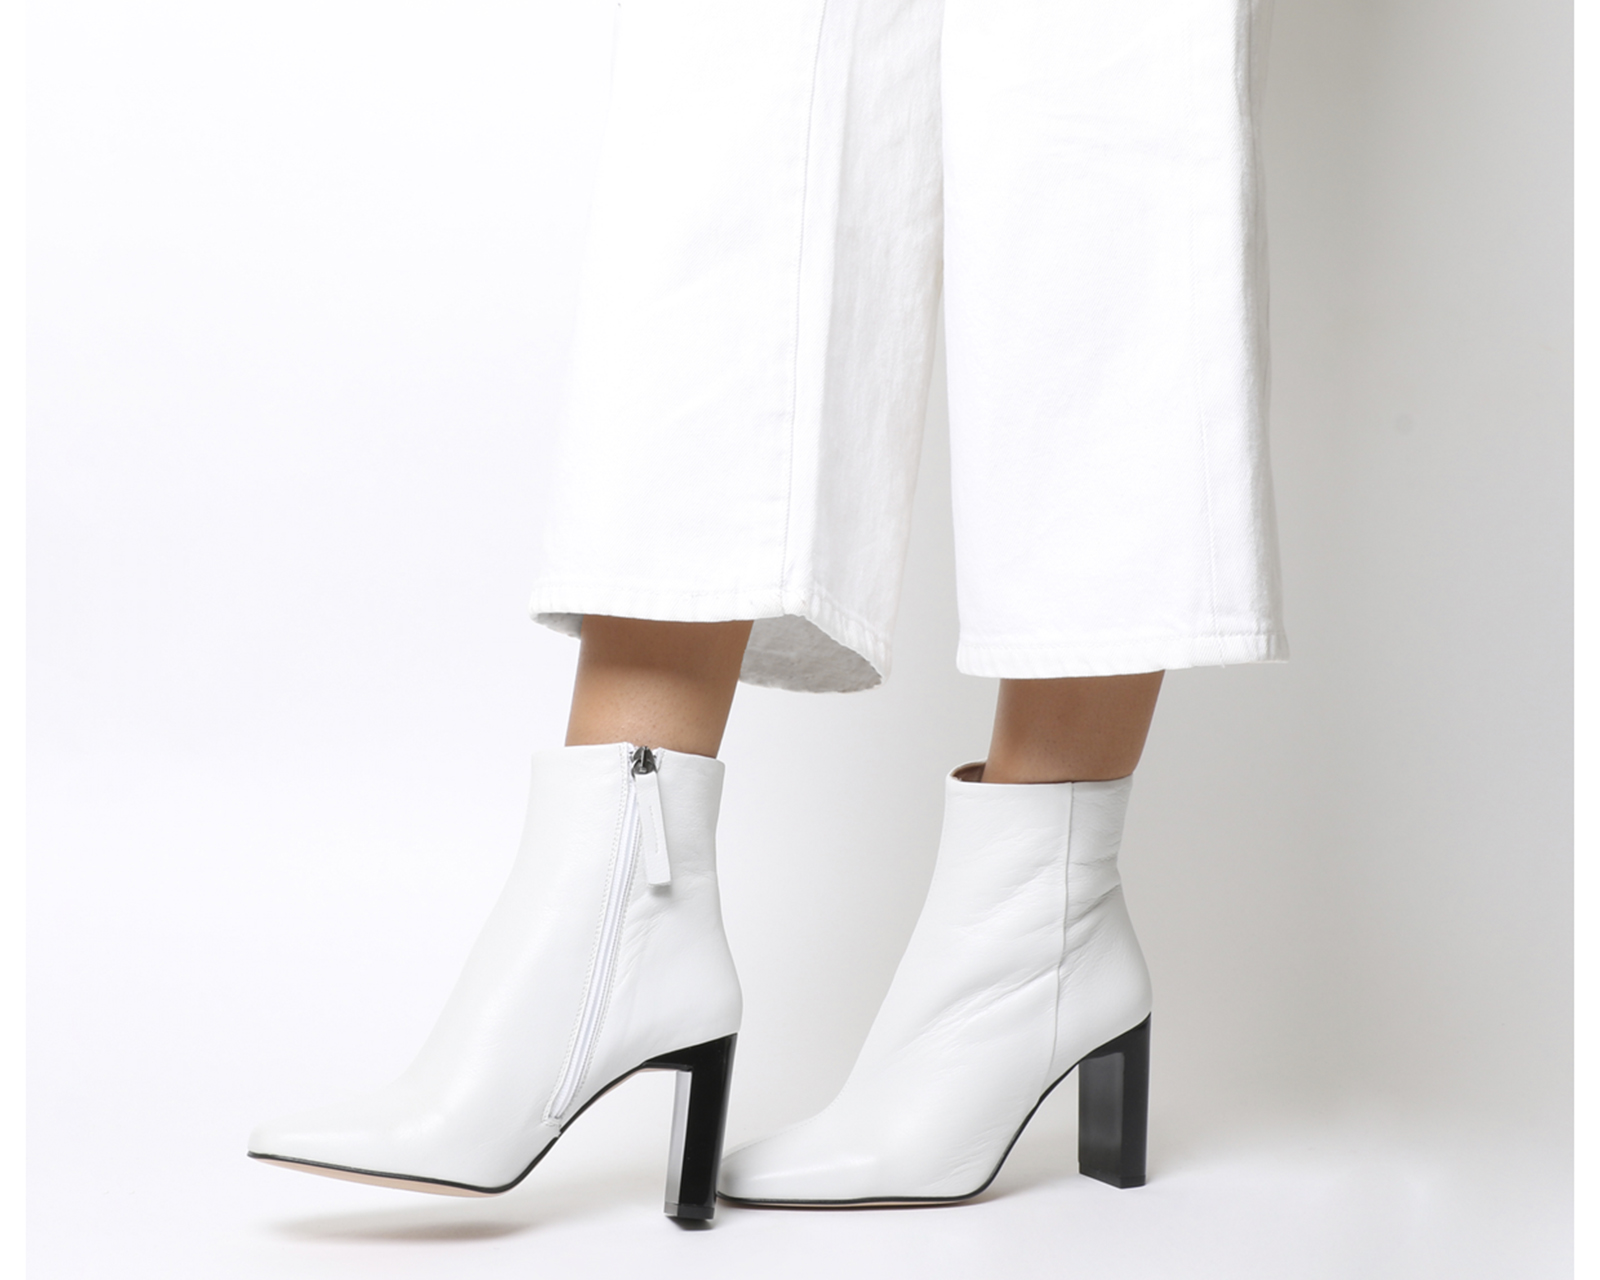 white heeled boots uk